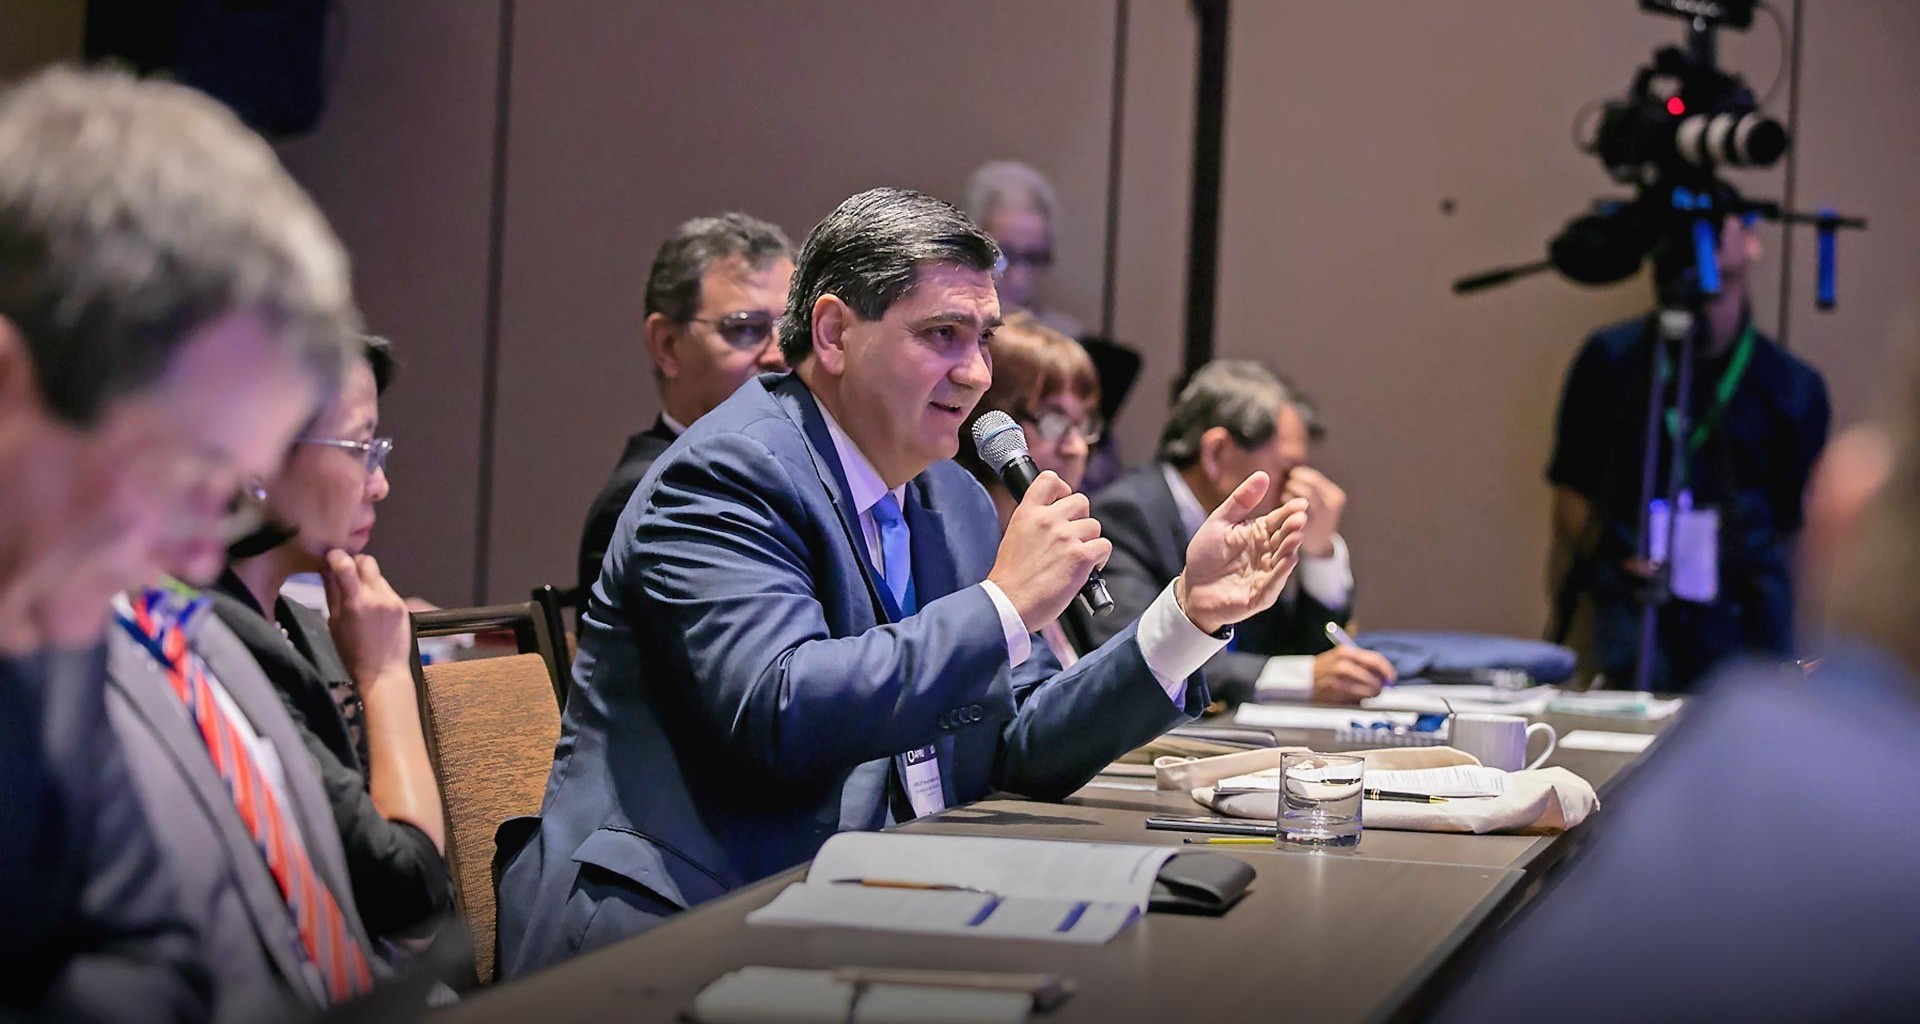 David Garza, rector del Tec de Monterrey en la reunión de la APRU 2019 en Los Angeles